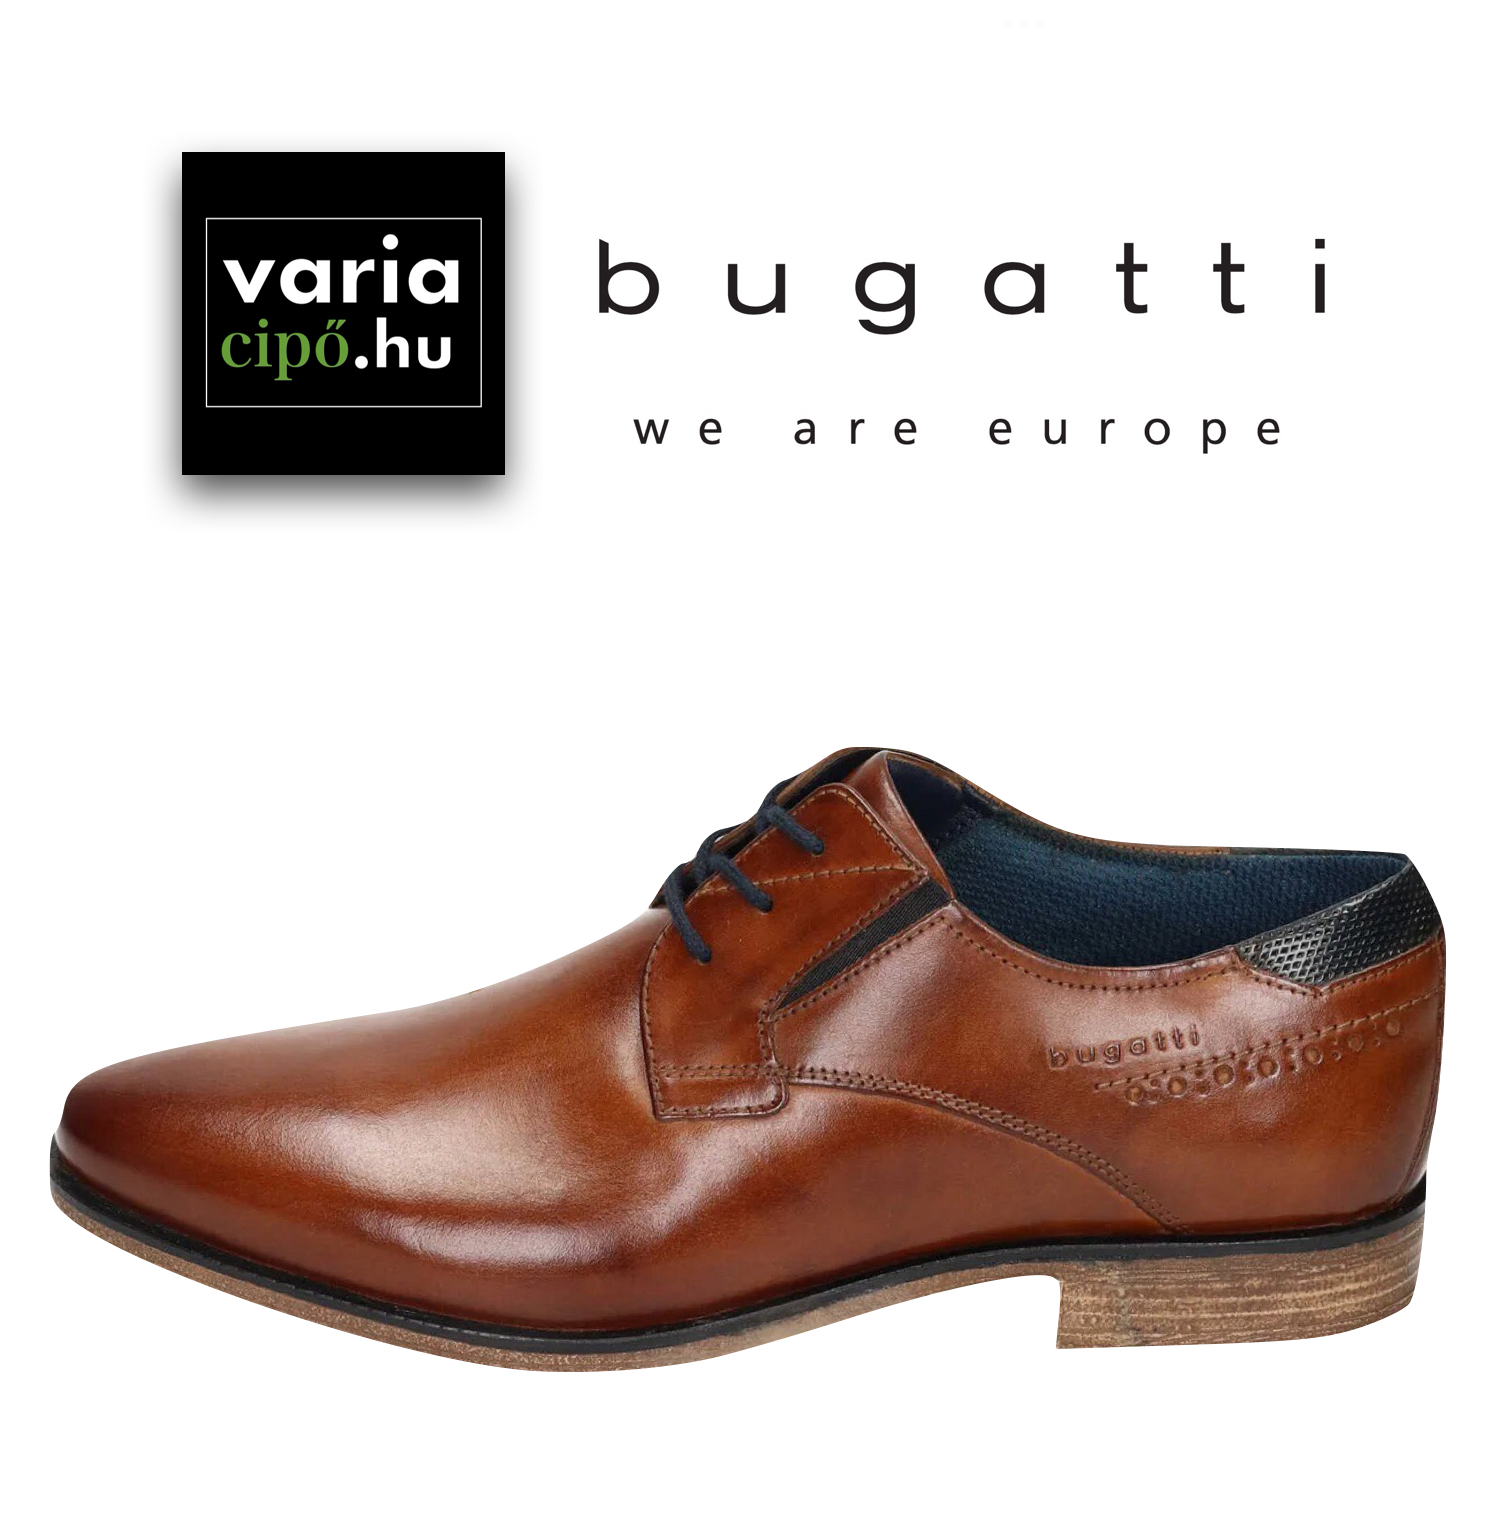 Bugatti barna alkalmi bőrcipő, 311-25101-1100 6300 cognac